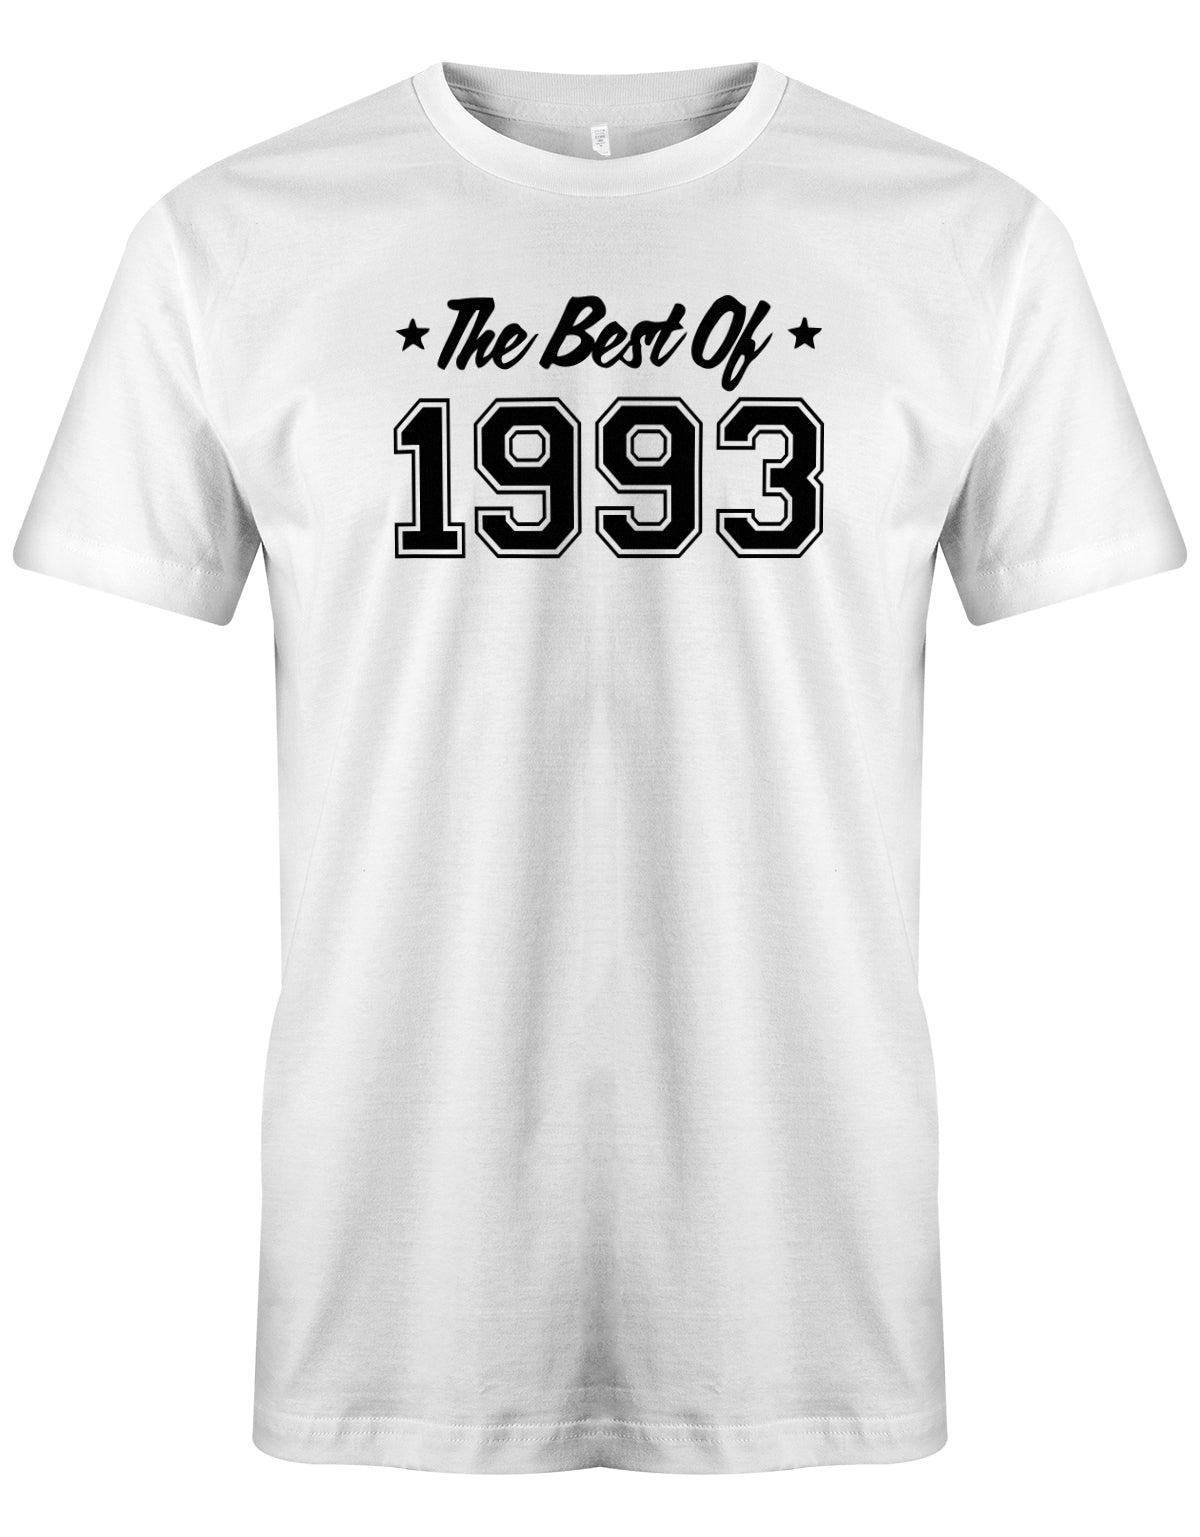 Cooles T-Shirt zum 30 Geburtstag für den Mann Bedruckt mit: The best of 1993 - das beste aus 1993. Das 30 Geburtstag Männer Shirt Lustig ist eine super Geschenkidee für alle 30 Jährigen. Man wird nur einmal 30 Jahre. 30 geburtstag Männer Shirt ✓ 1993 geburtstag shirt ✓ t-shirt zum 30 geburtstag mann ✓ shirt 30 mann Weiss